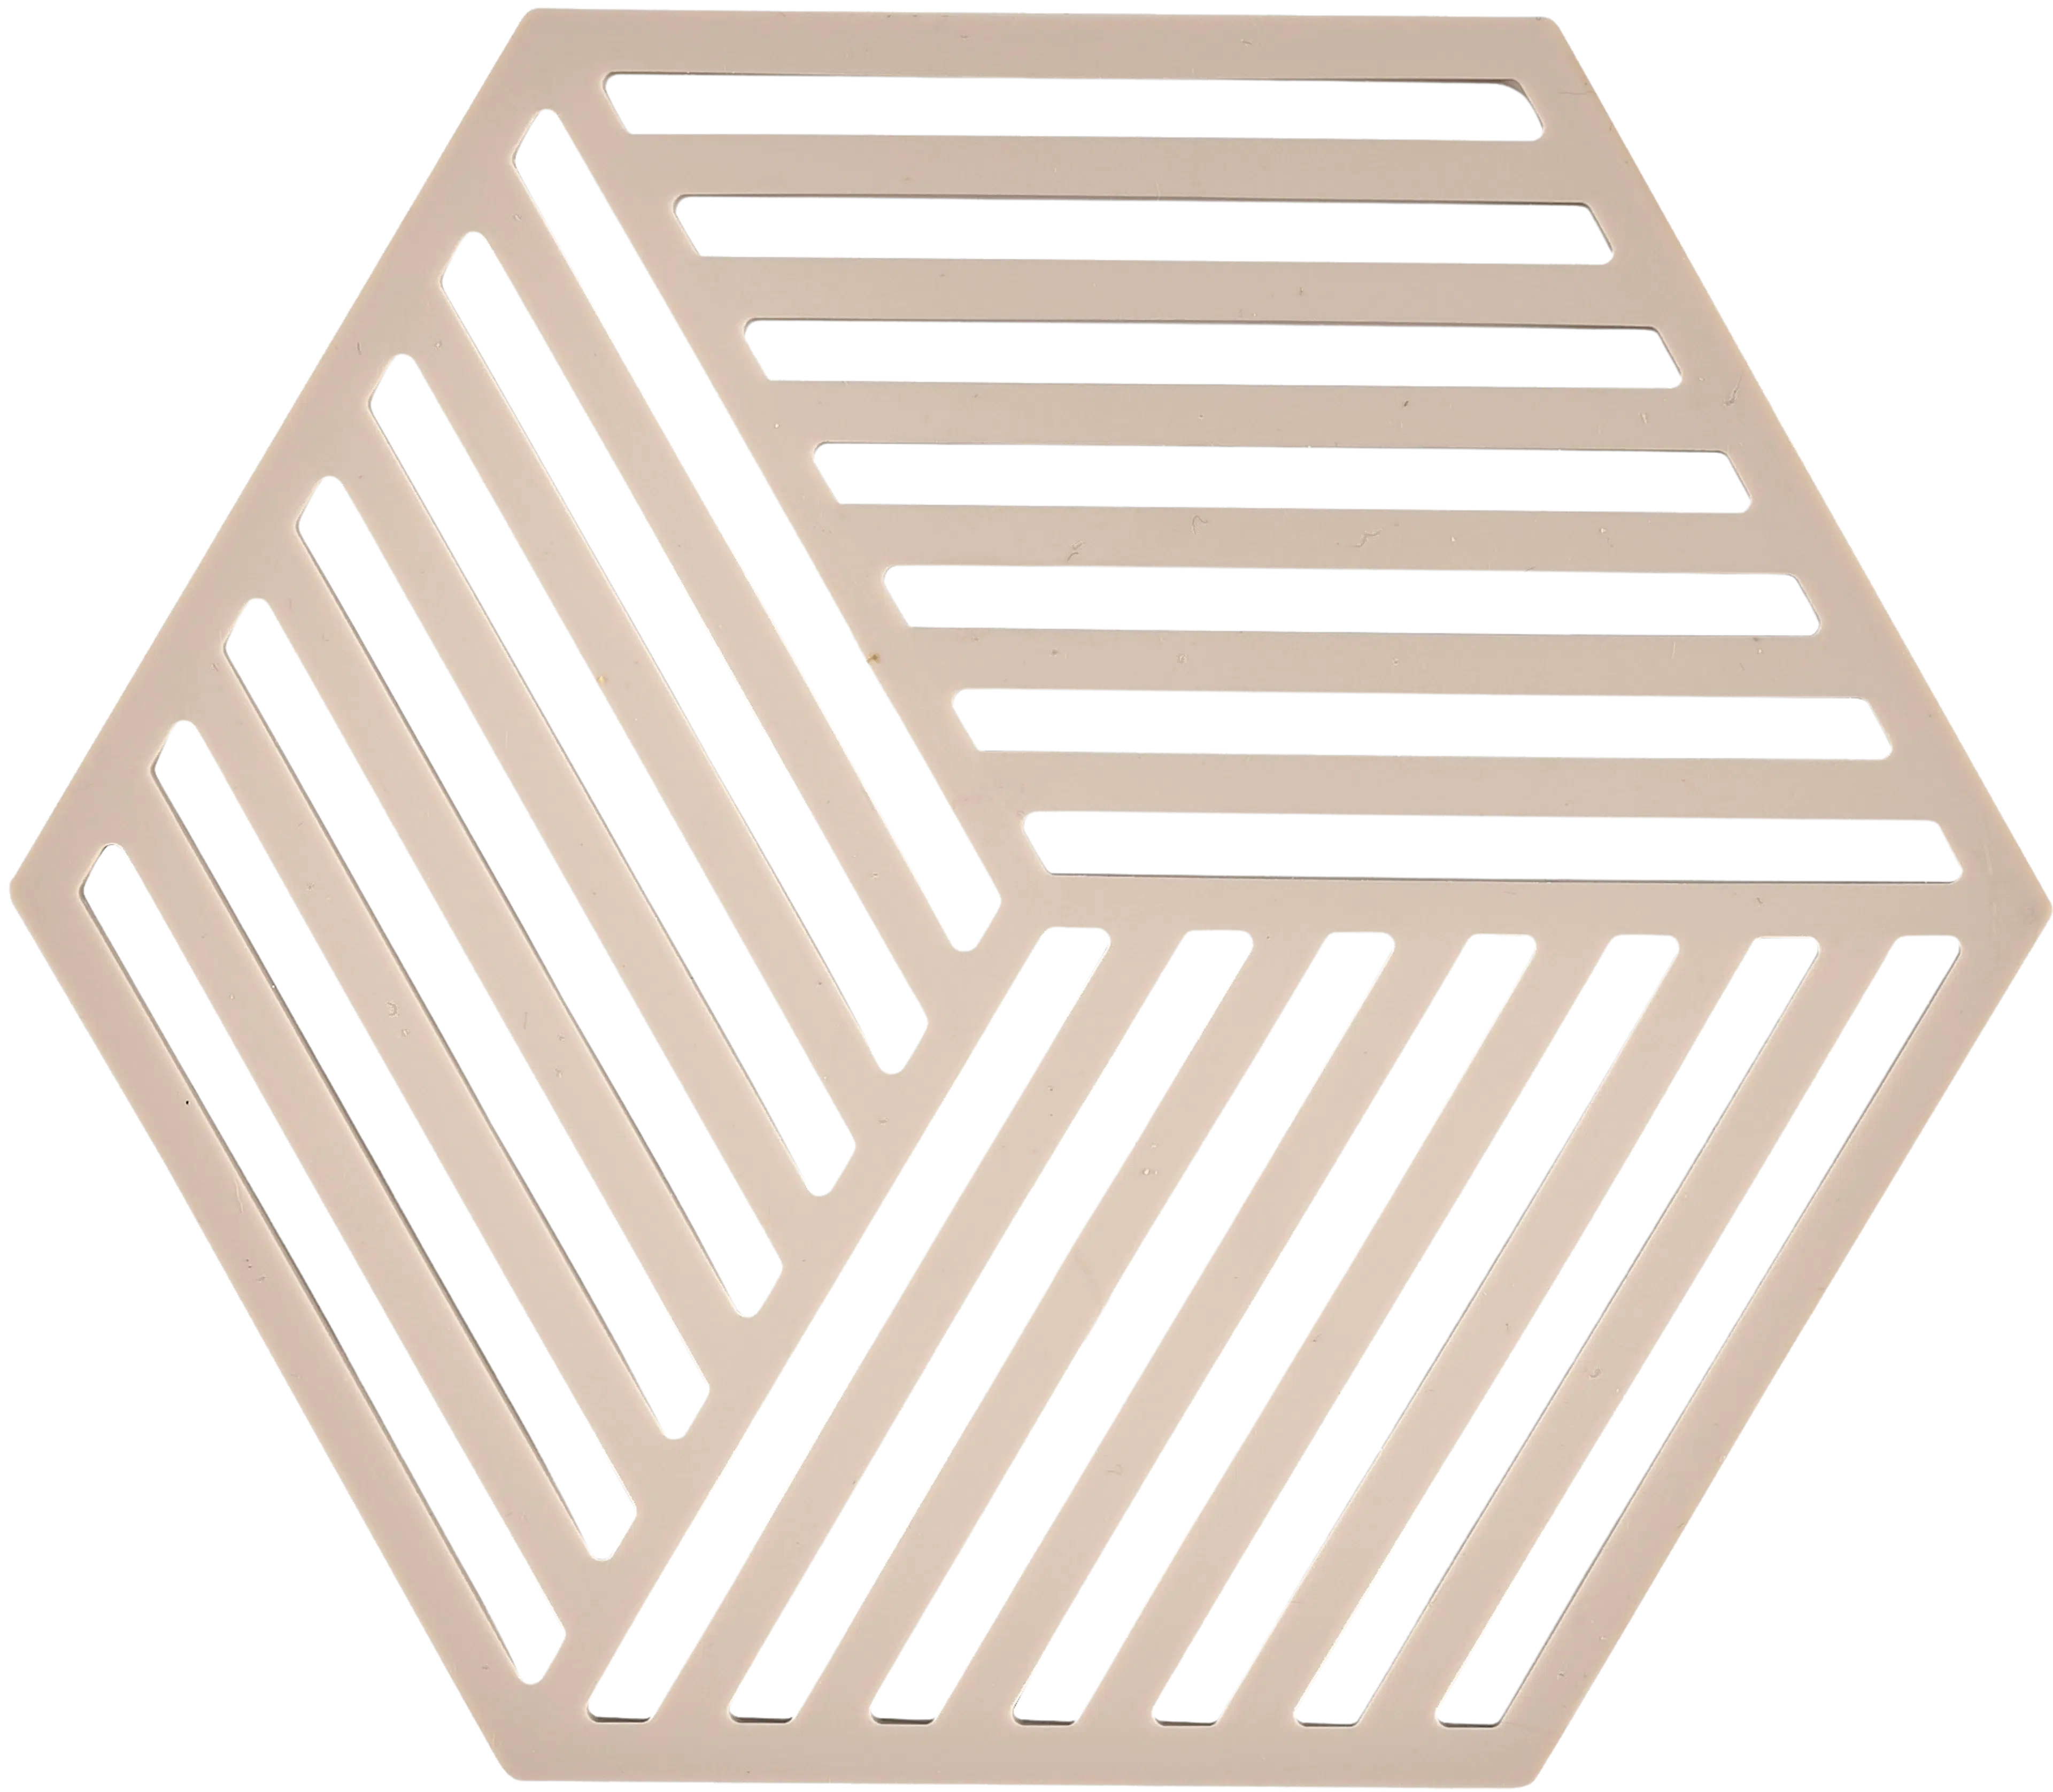 Zone Hexagon pannunalunen 16x14cm desert